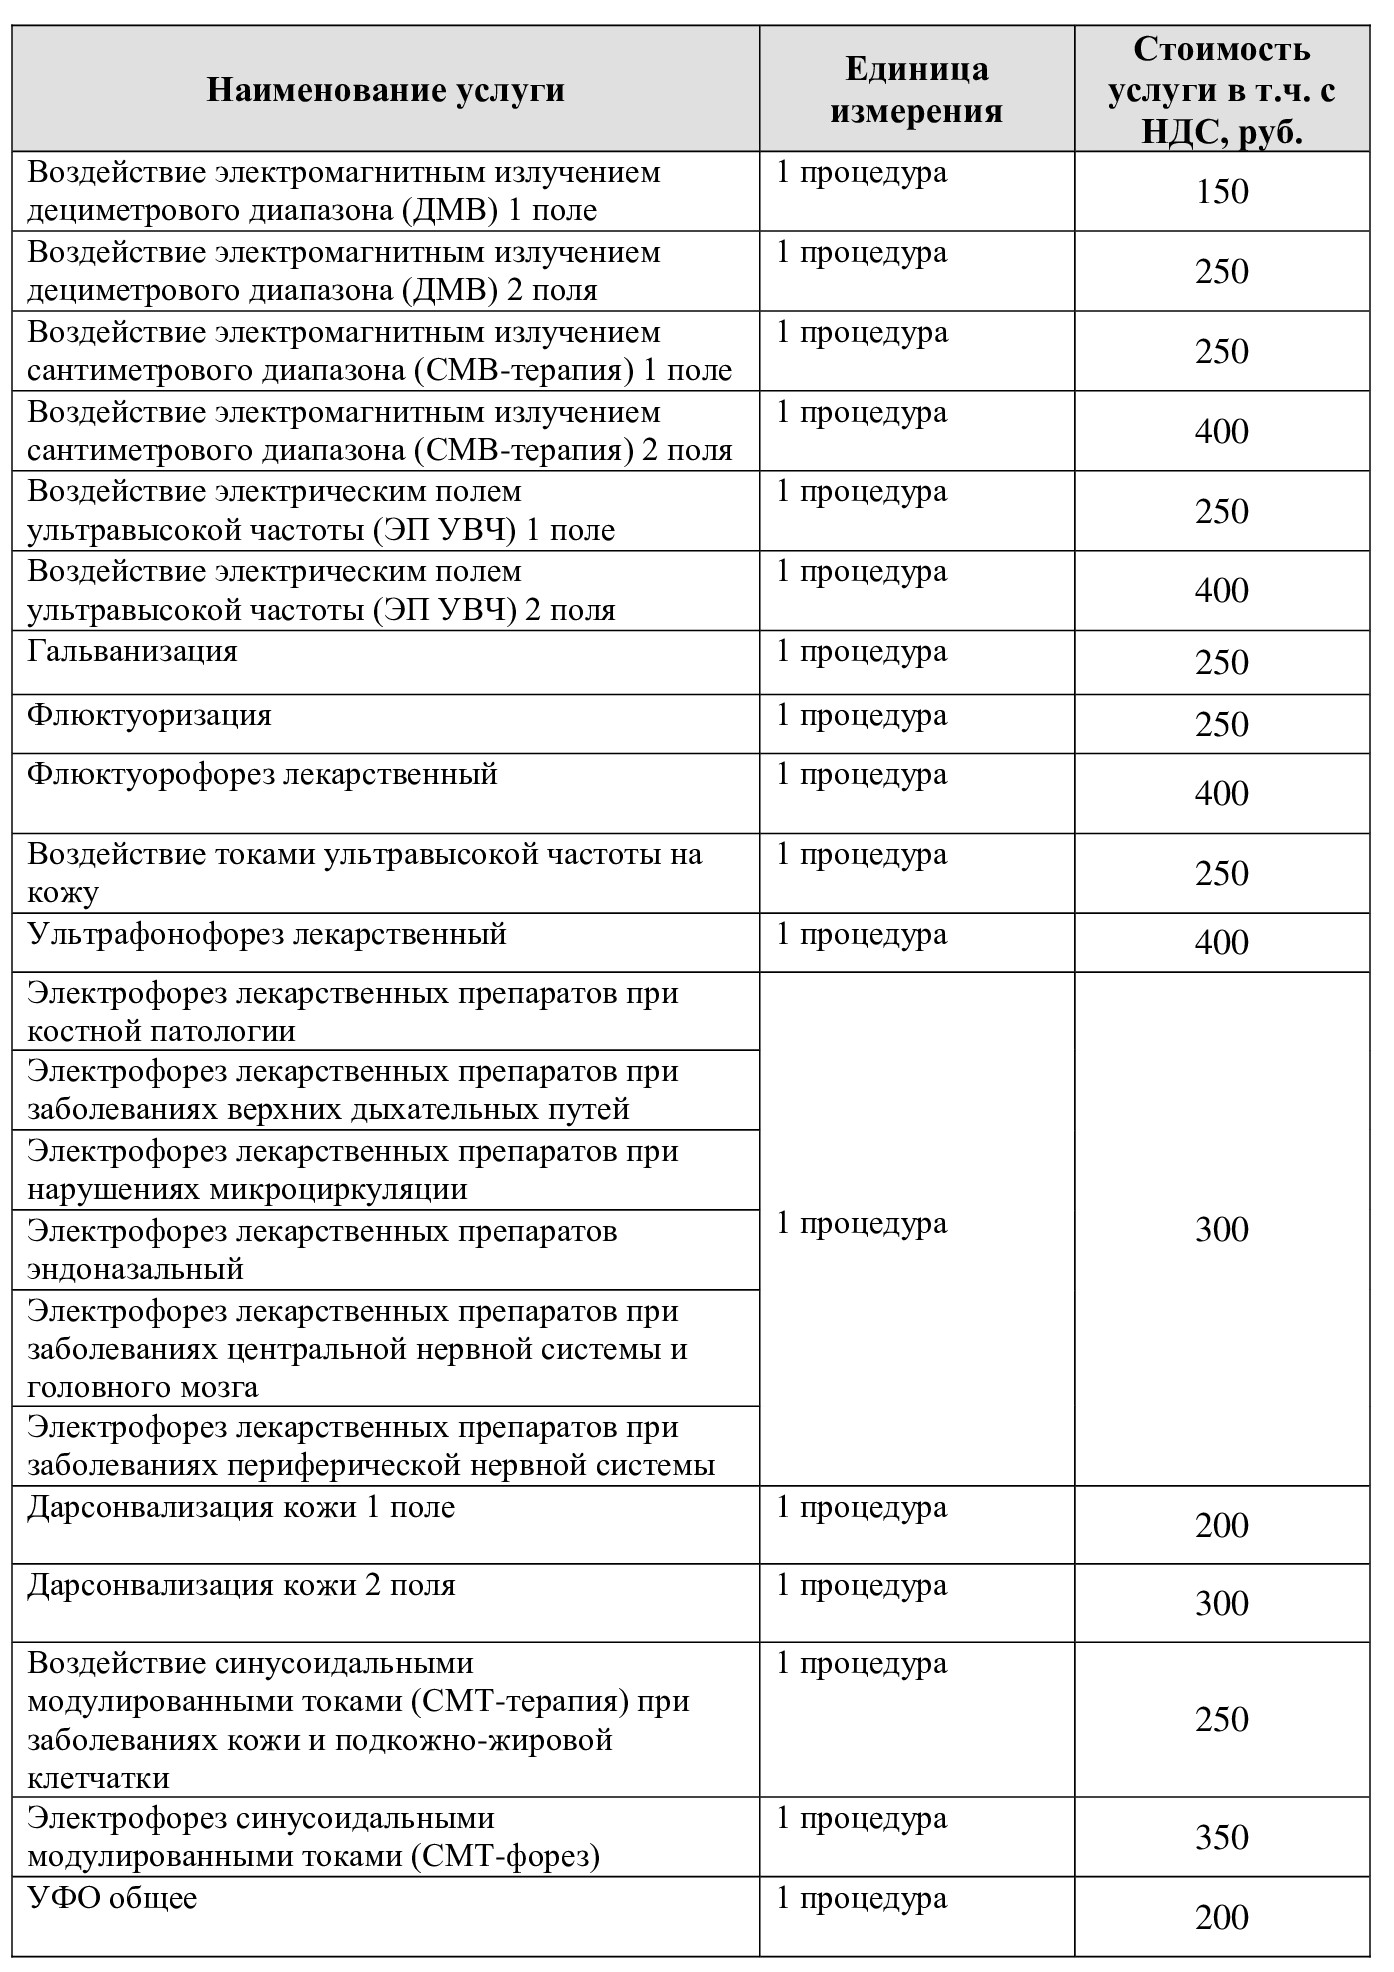 Цены на медицинские услуги Санаторий "Введенское" (Звенигород)